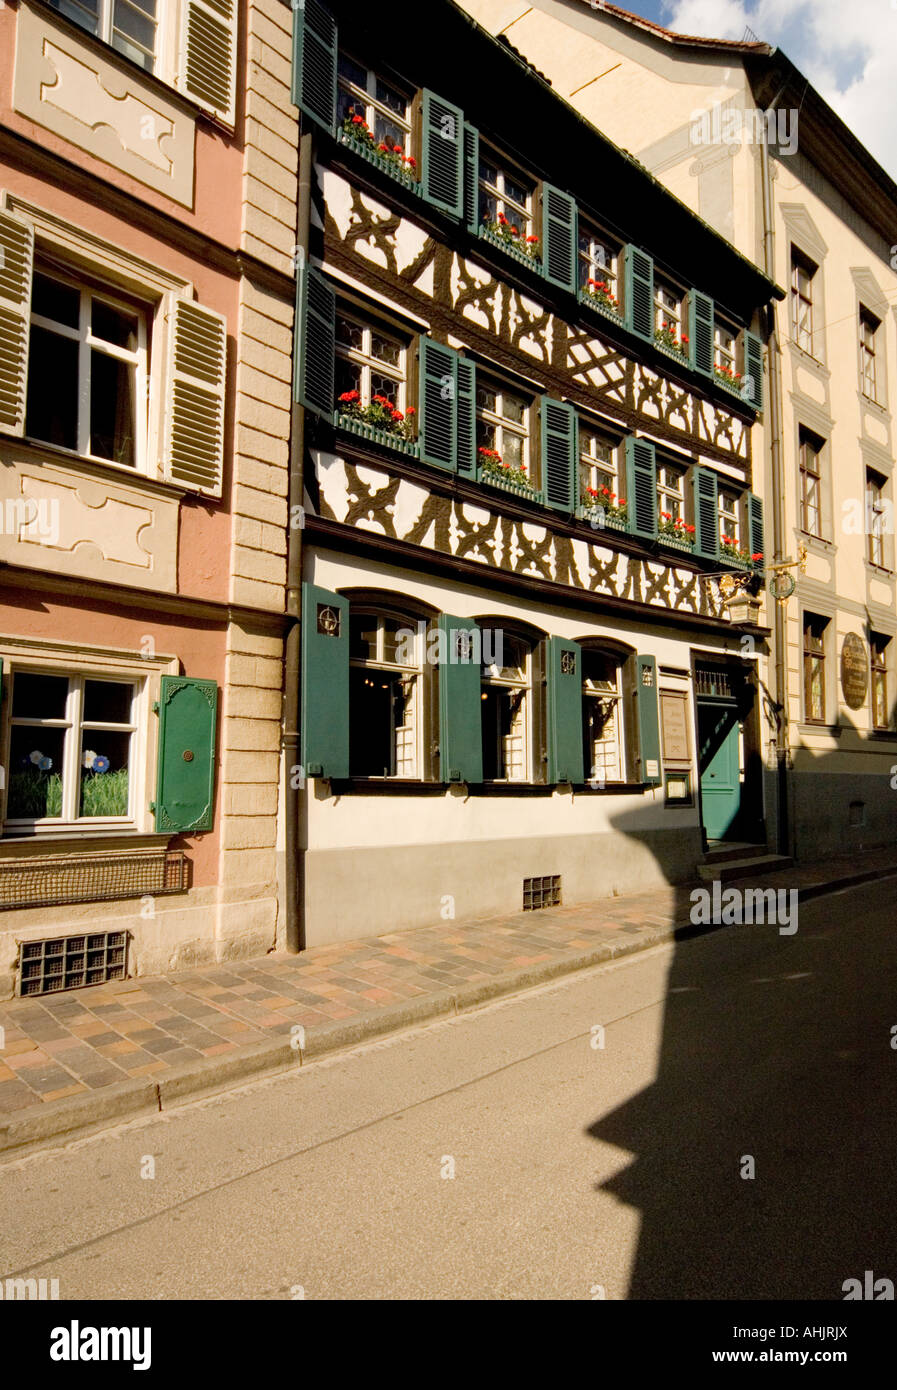 Schlenkerla bar and restaurant in Bamberg, Bavaria, Germany Stock Photo